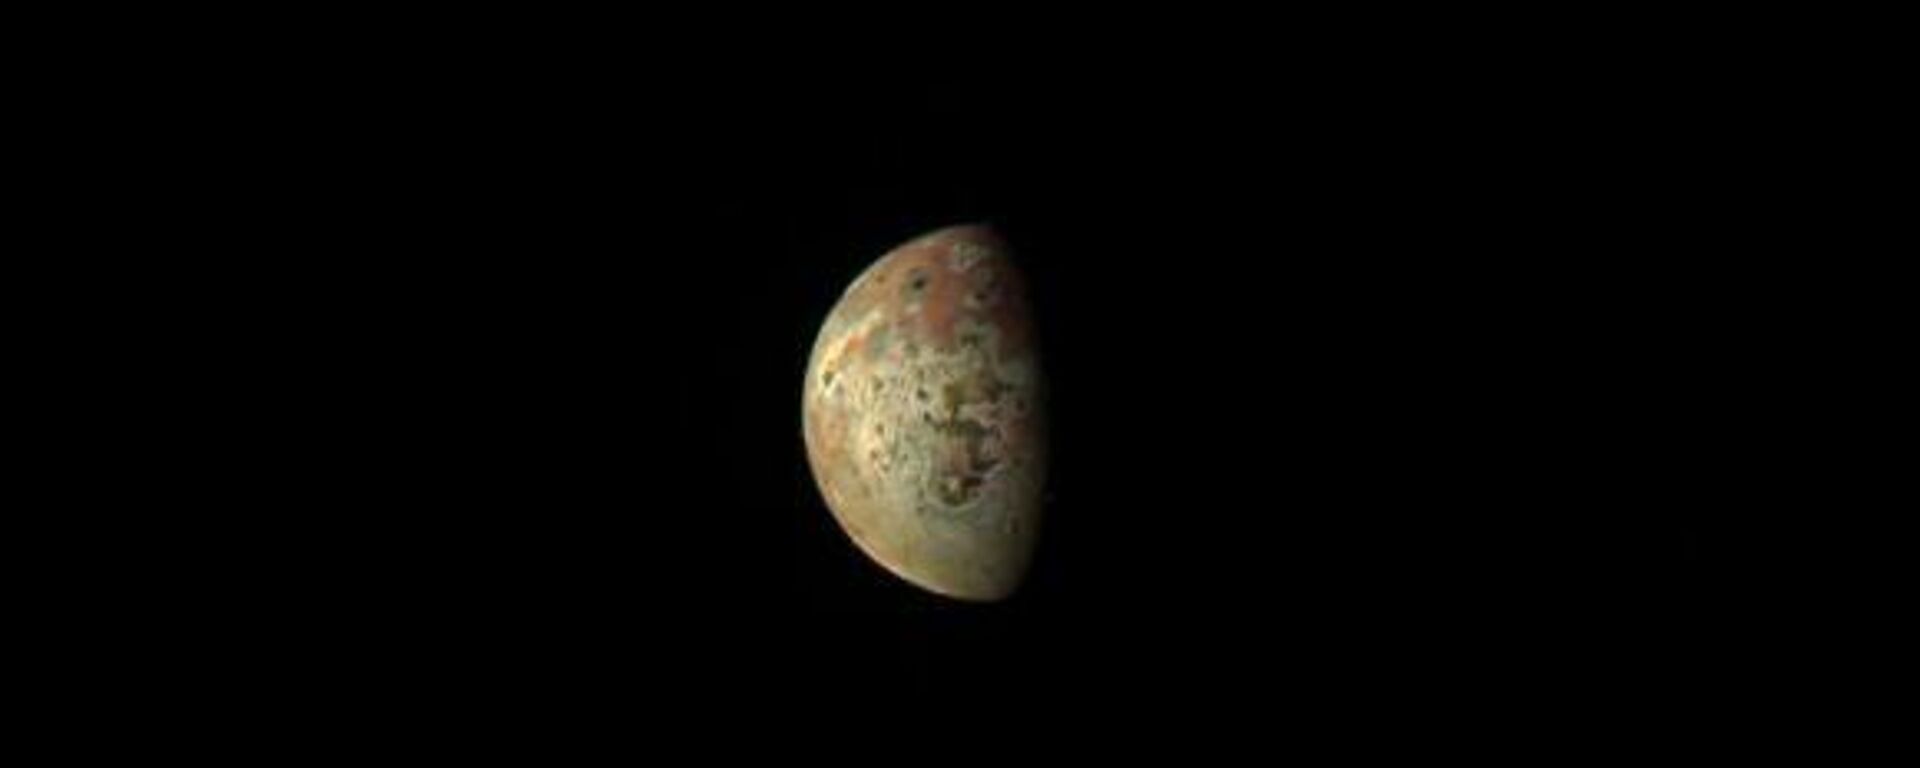 La luna Ío de Júpiter, vista por la cámara de la nave espacial Juno, el 1 de marzo de 2023 - Sputnik Mundo, 1920, 05.03.2023